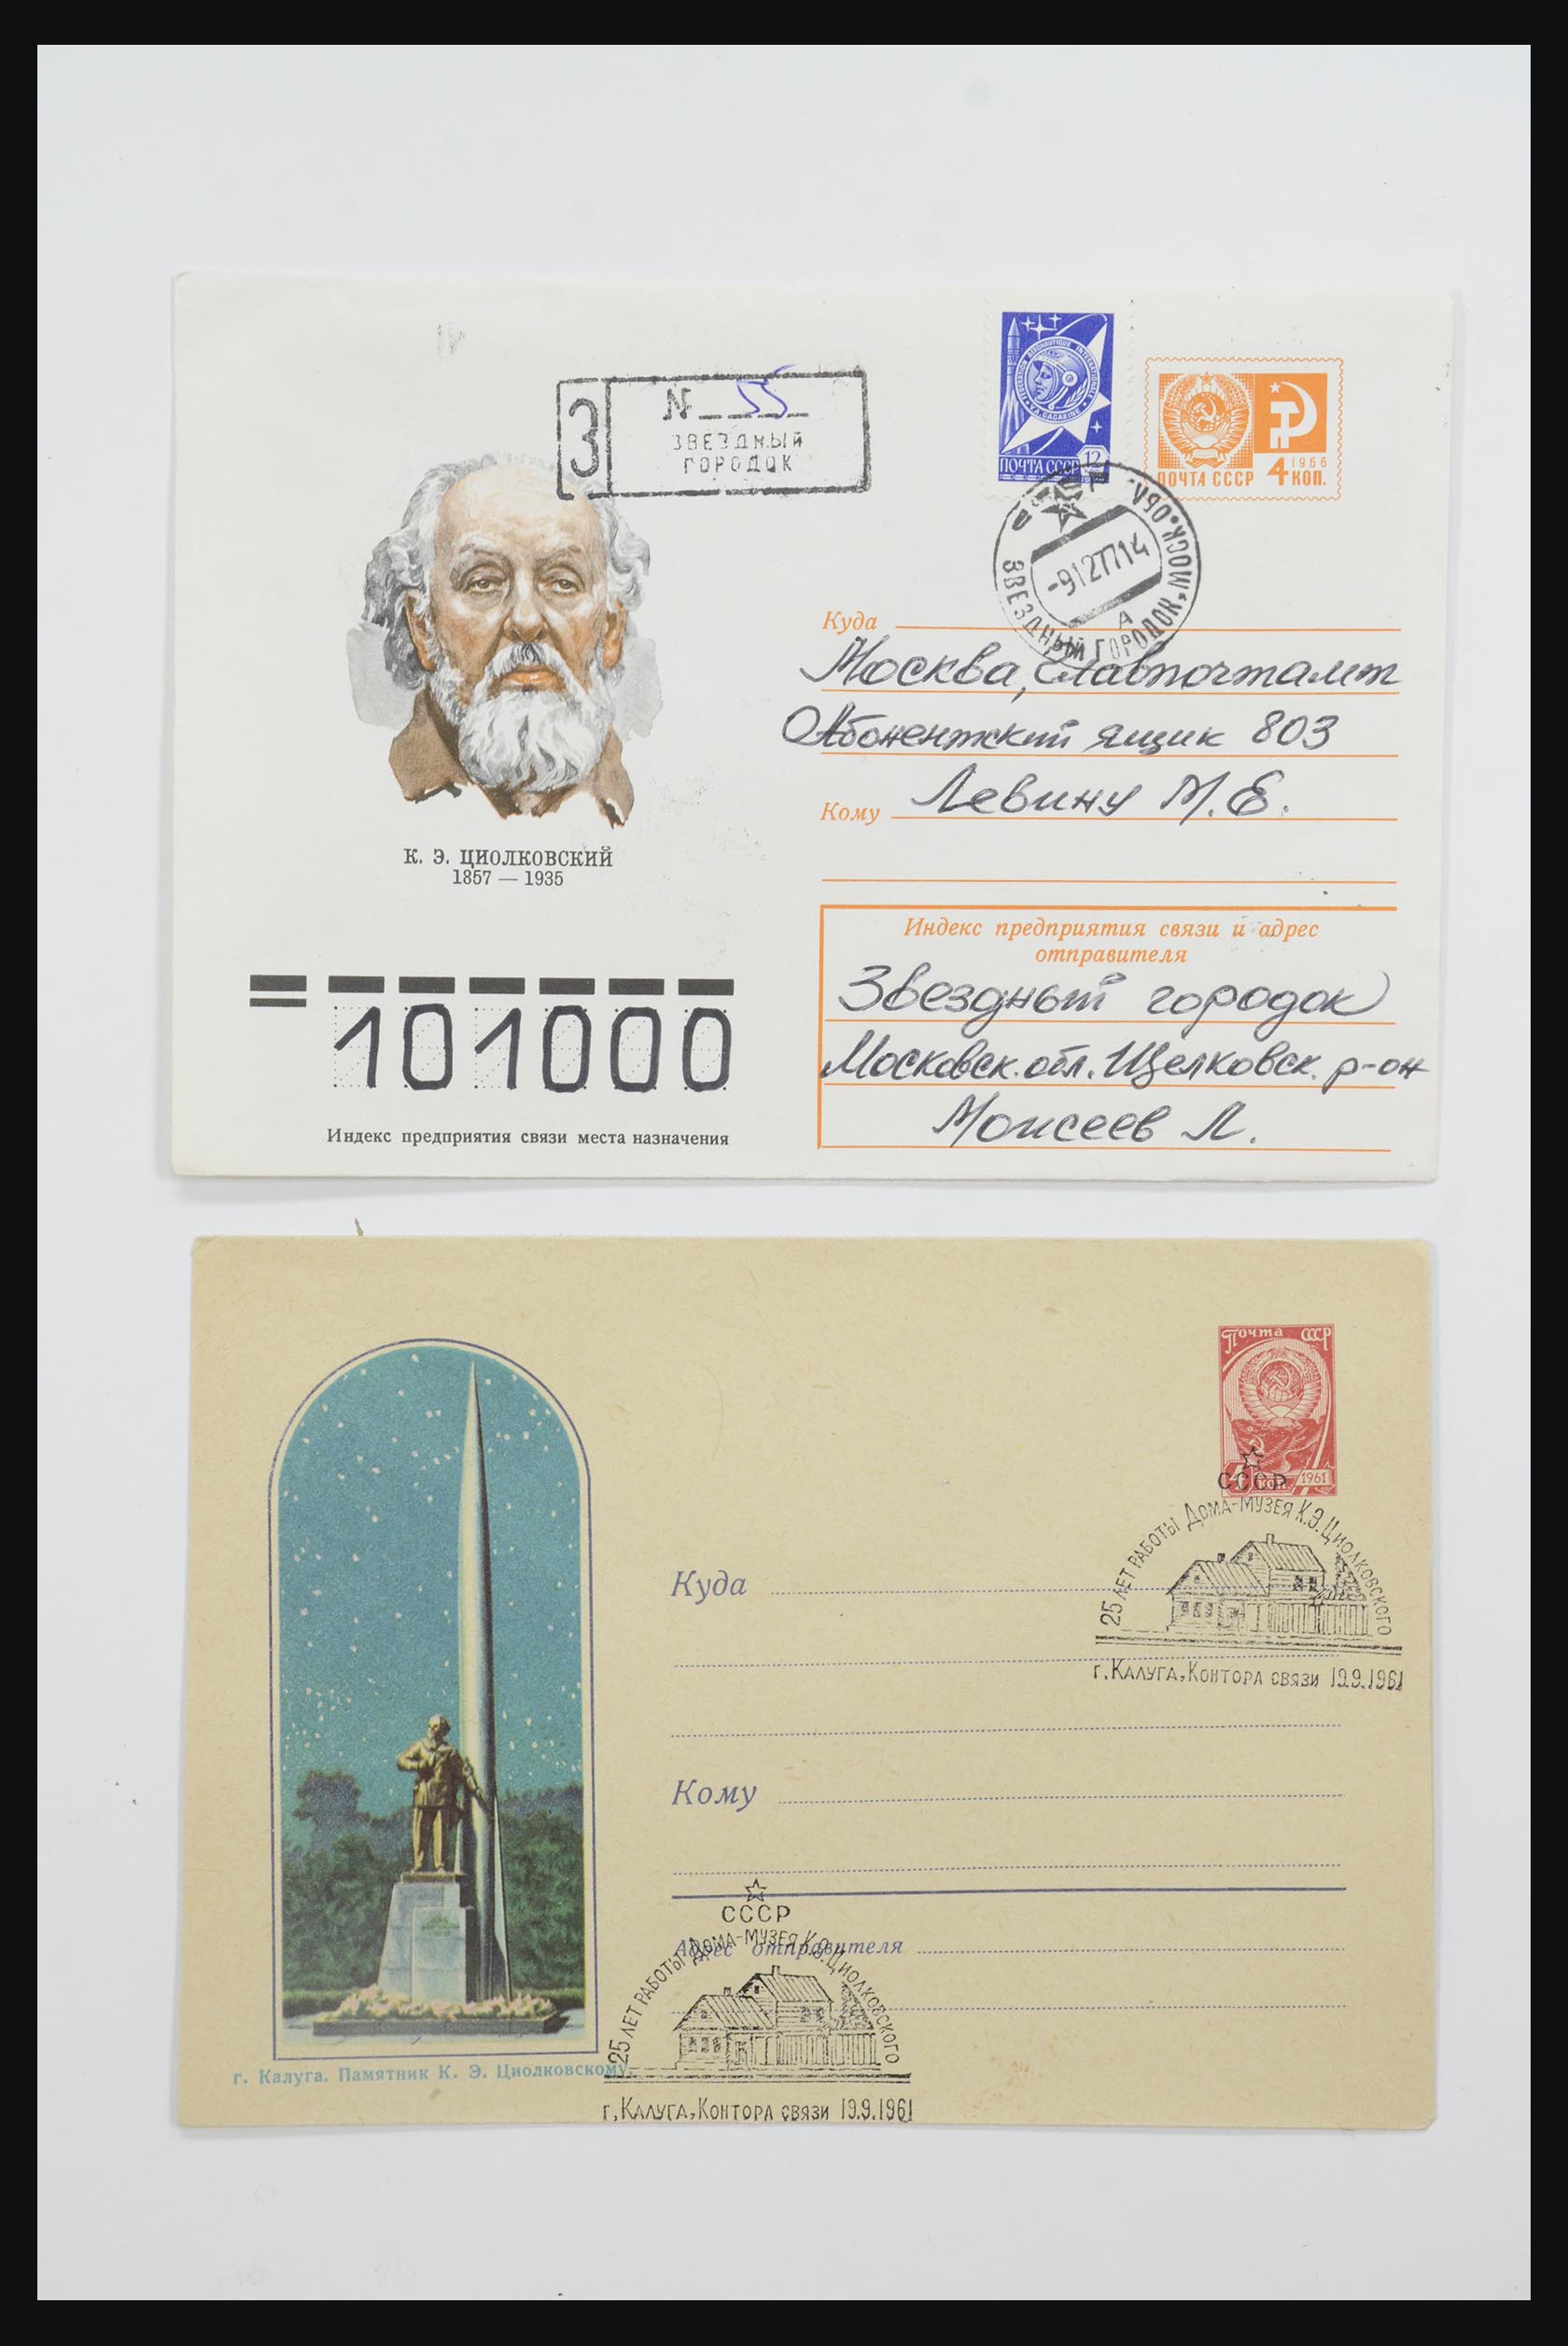 31605 0010 - 31605 Rusland postwaardestukken jaren 50-60.